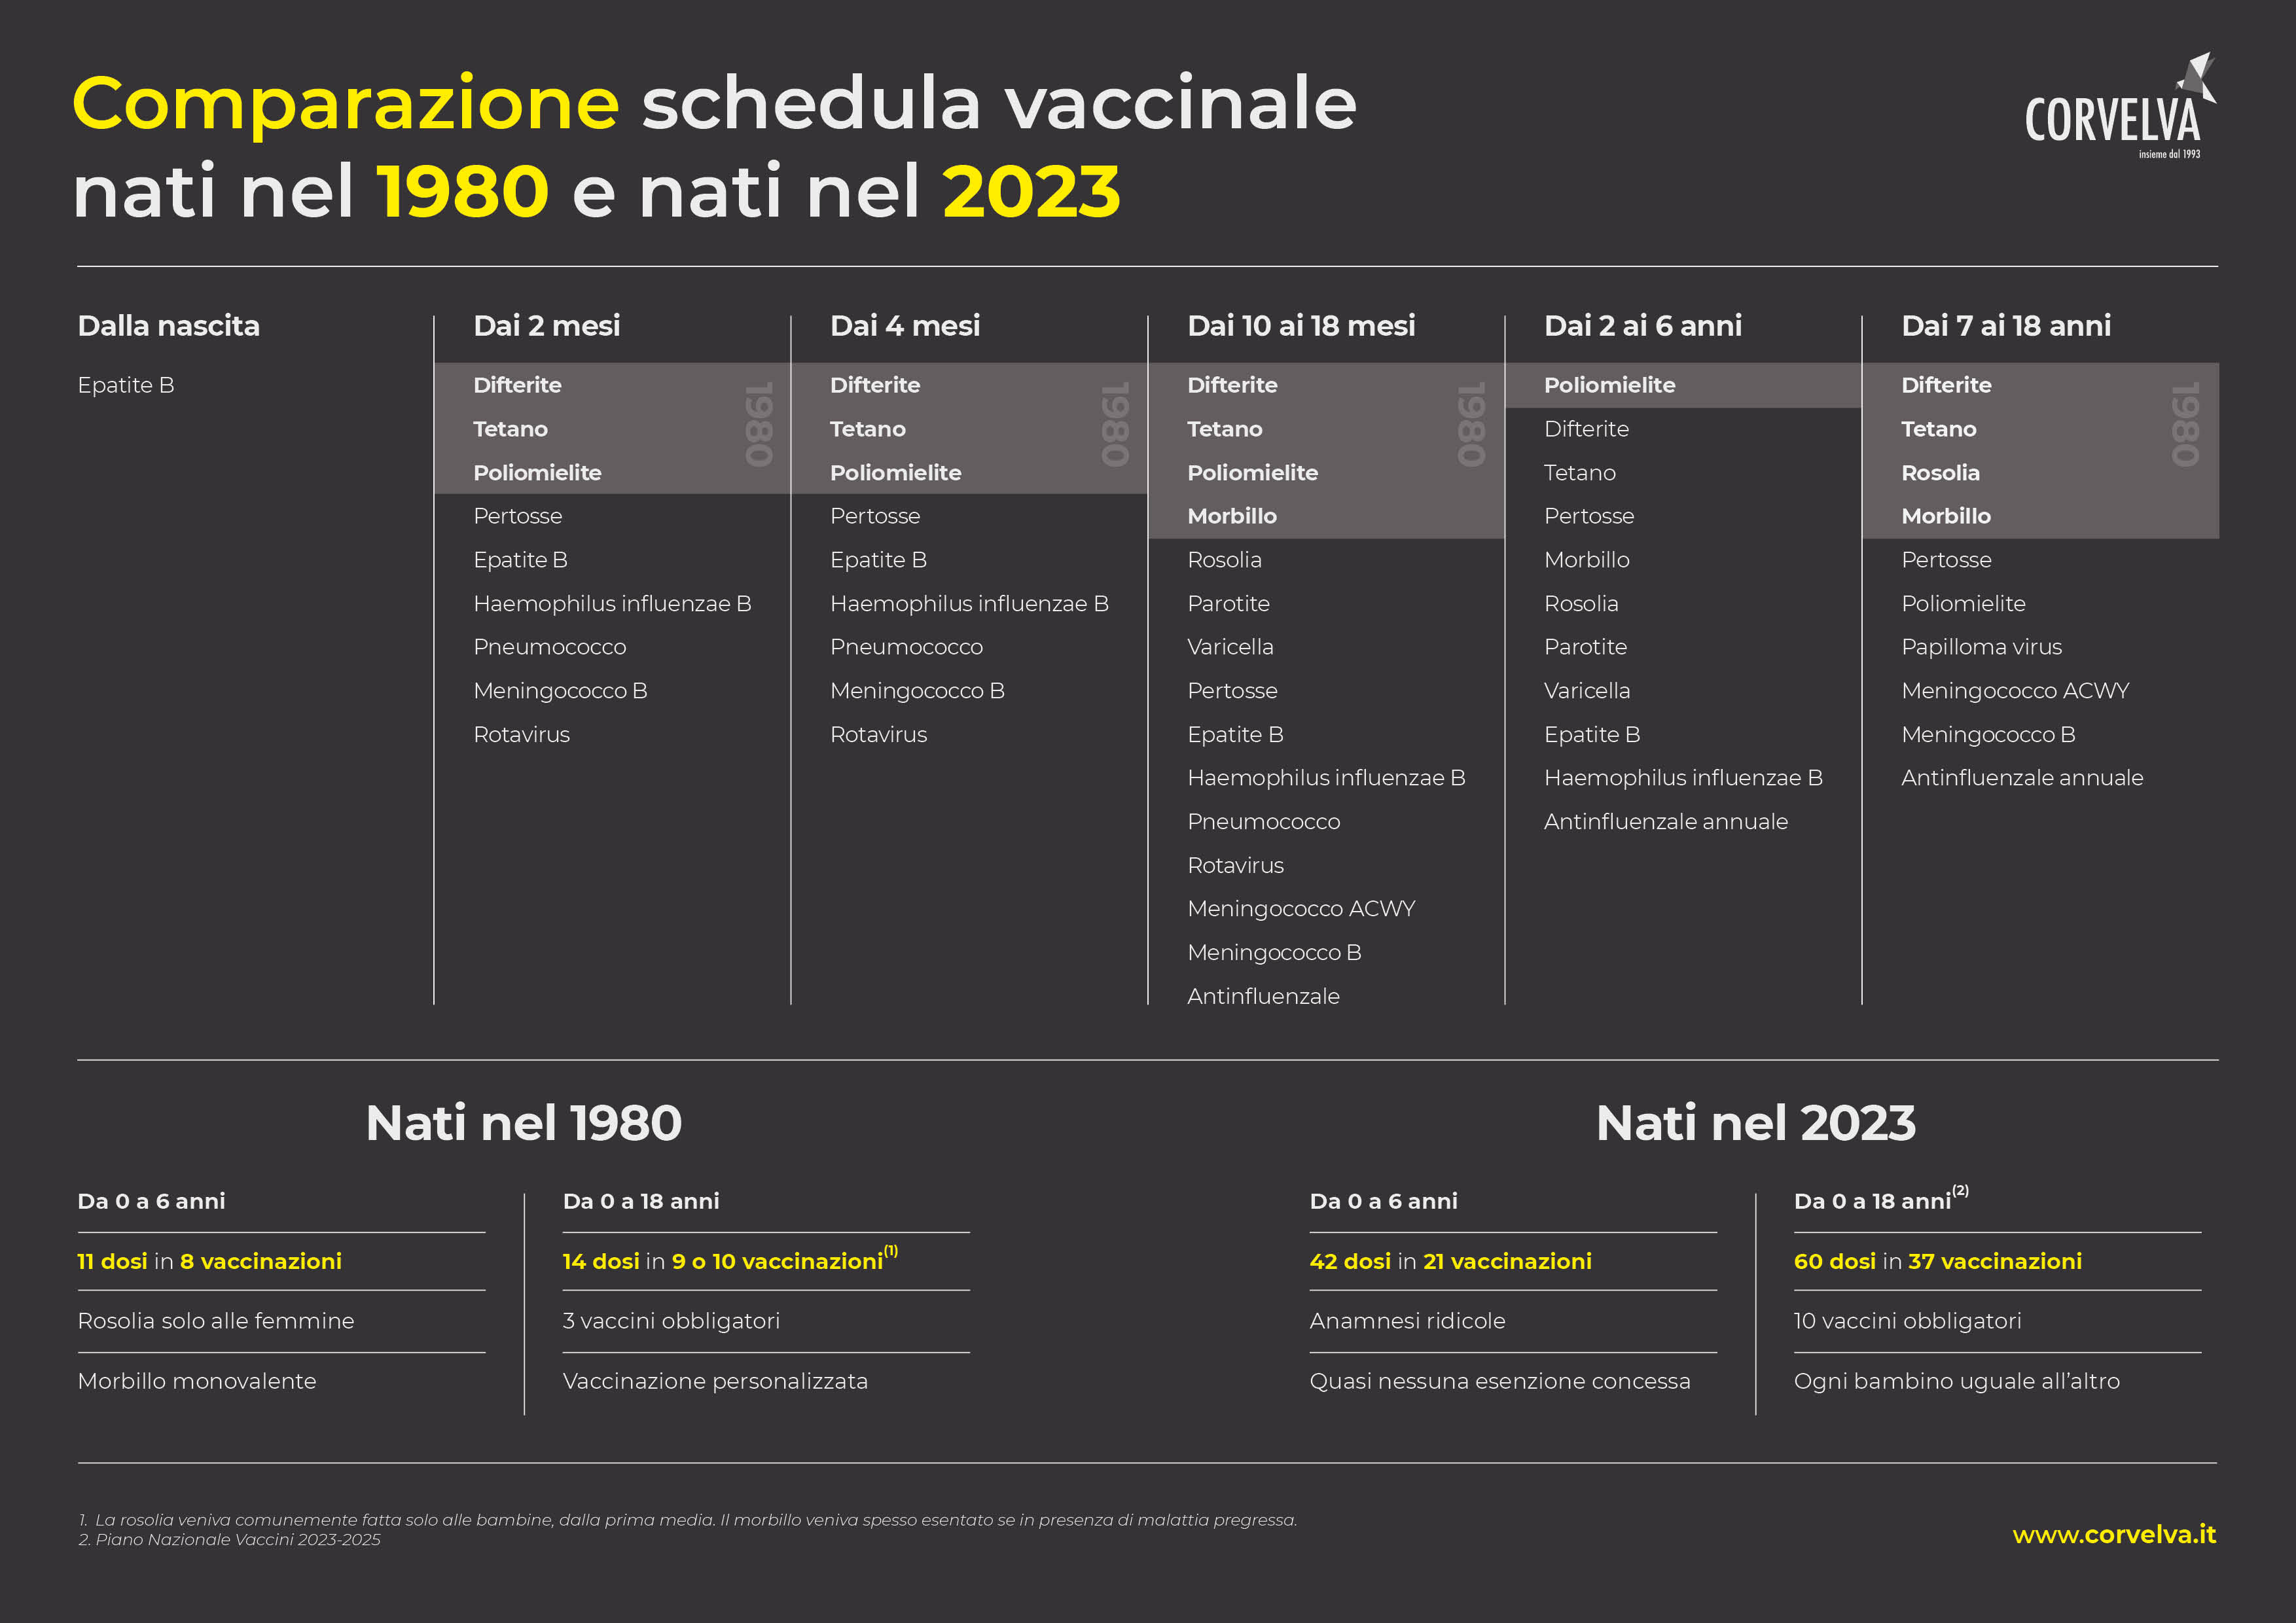 Comparazione schedula vaccinale nati nel 1980 e nati nel 2023